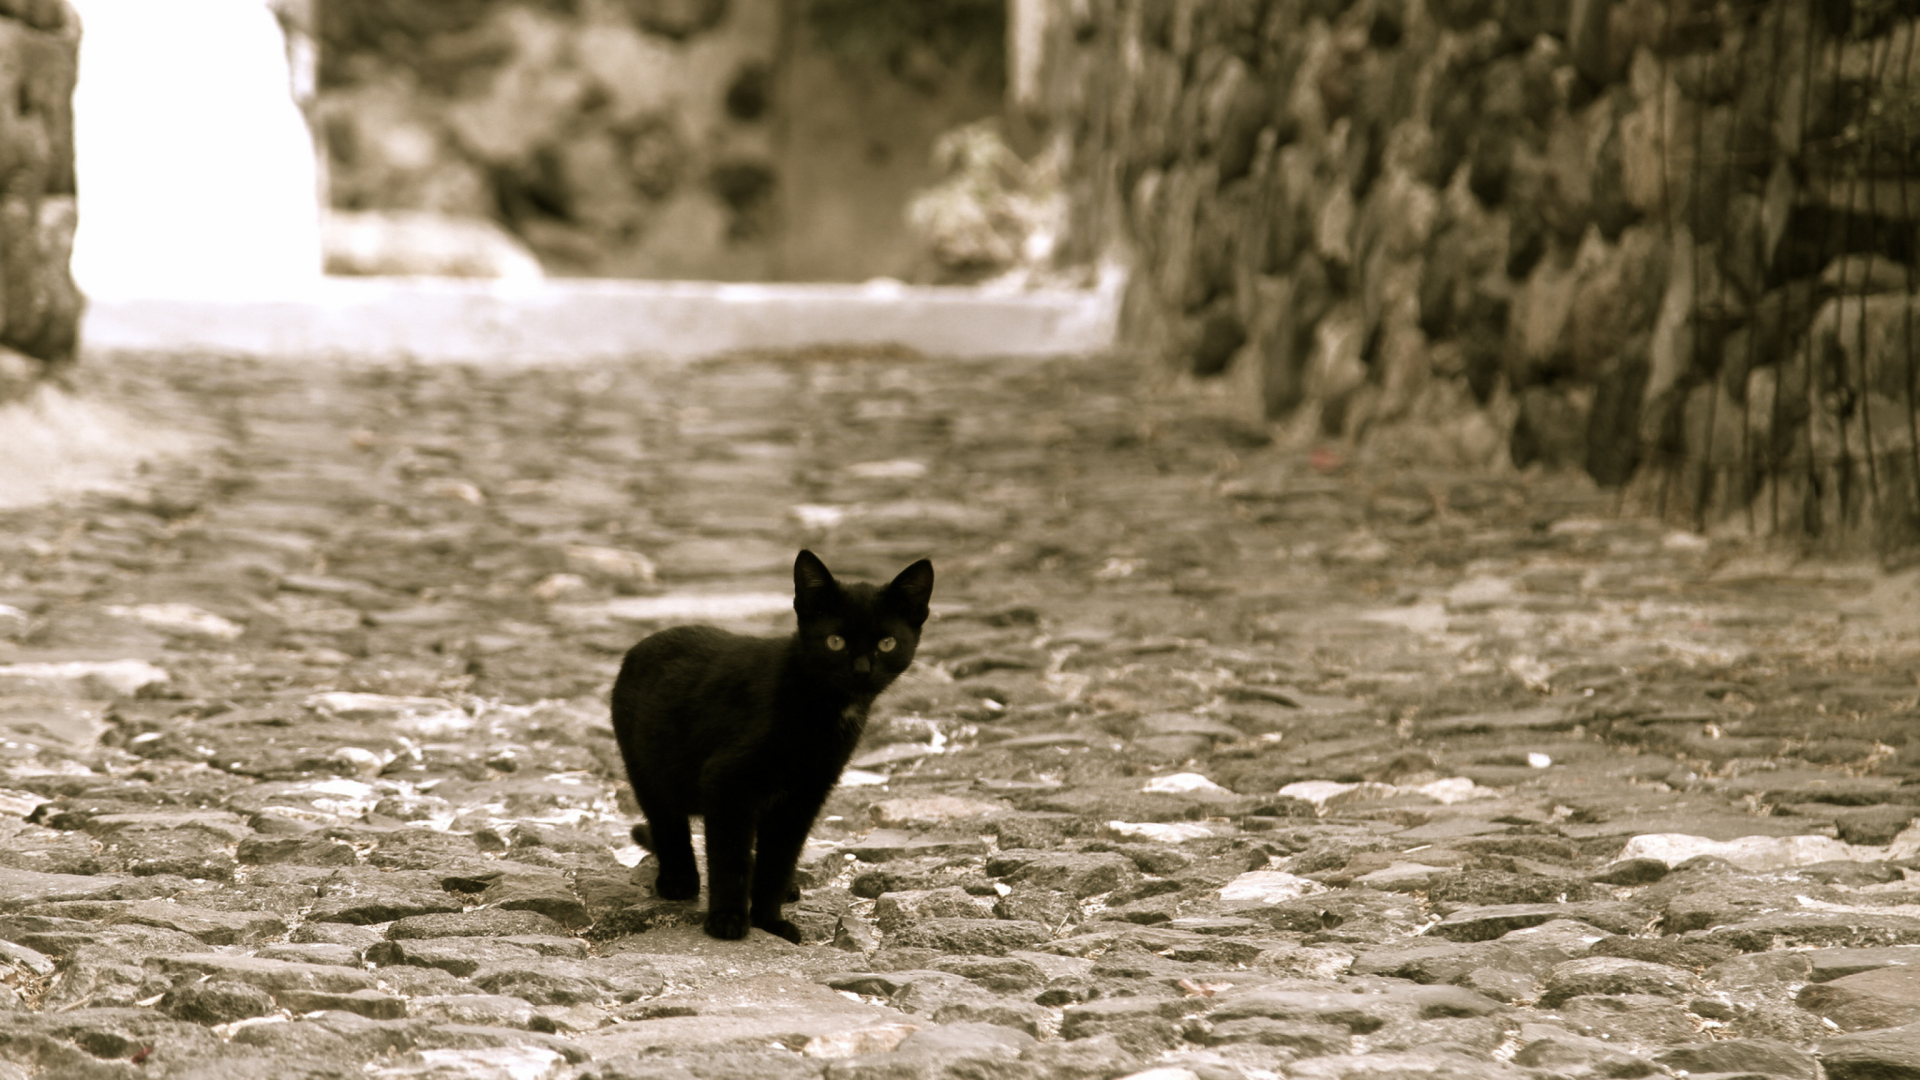 Обои Little Black Kitten 1920x1080